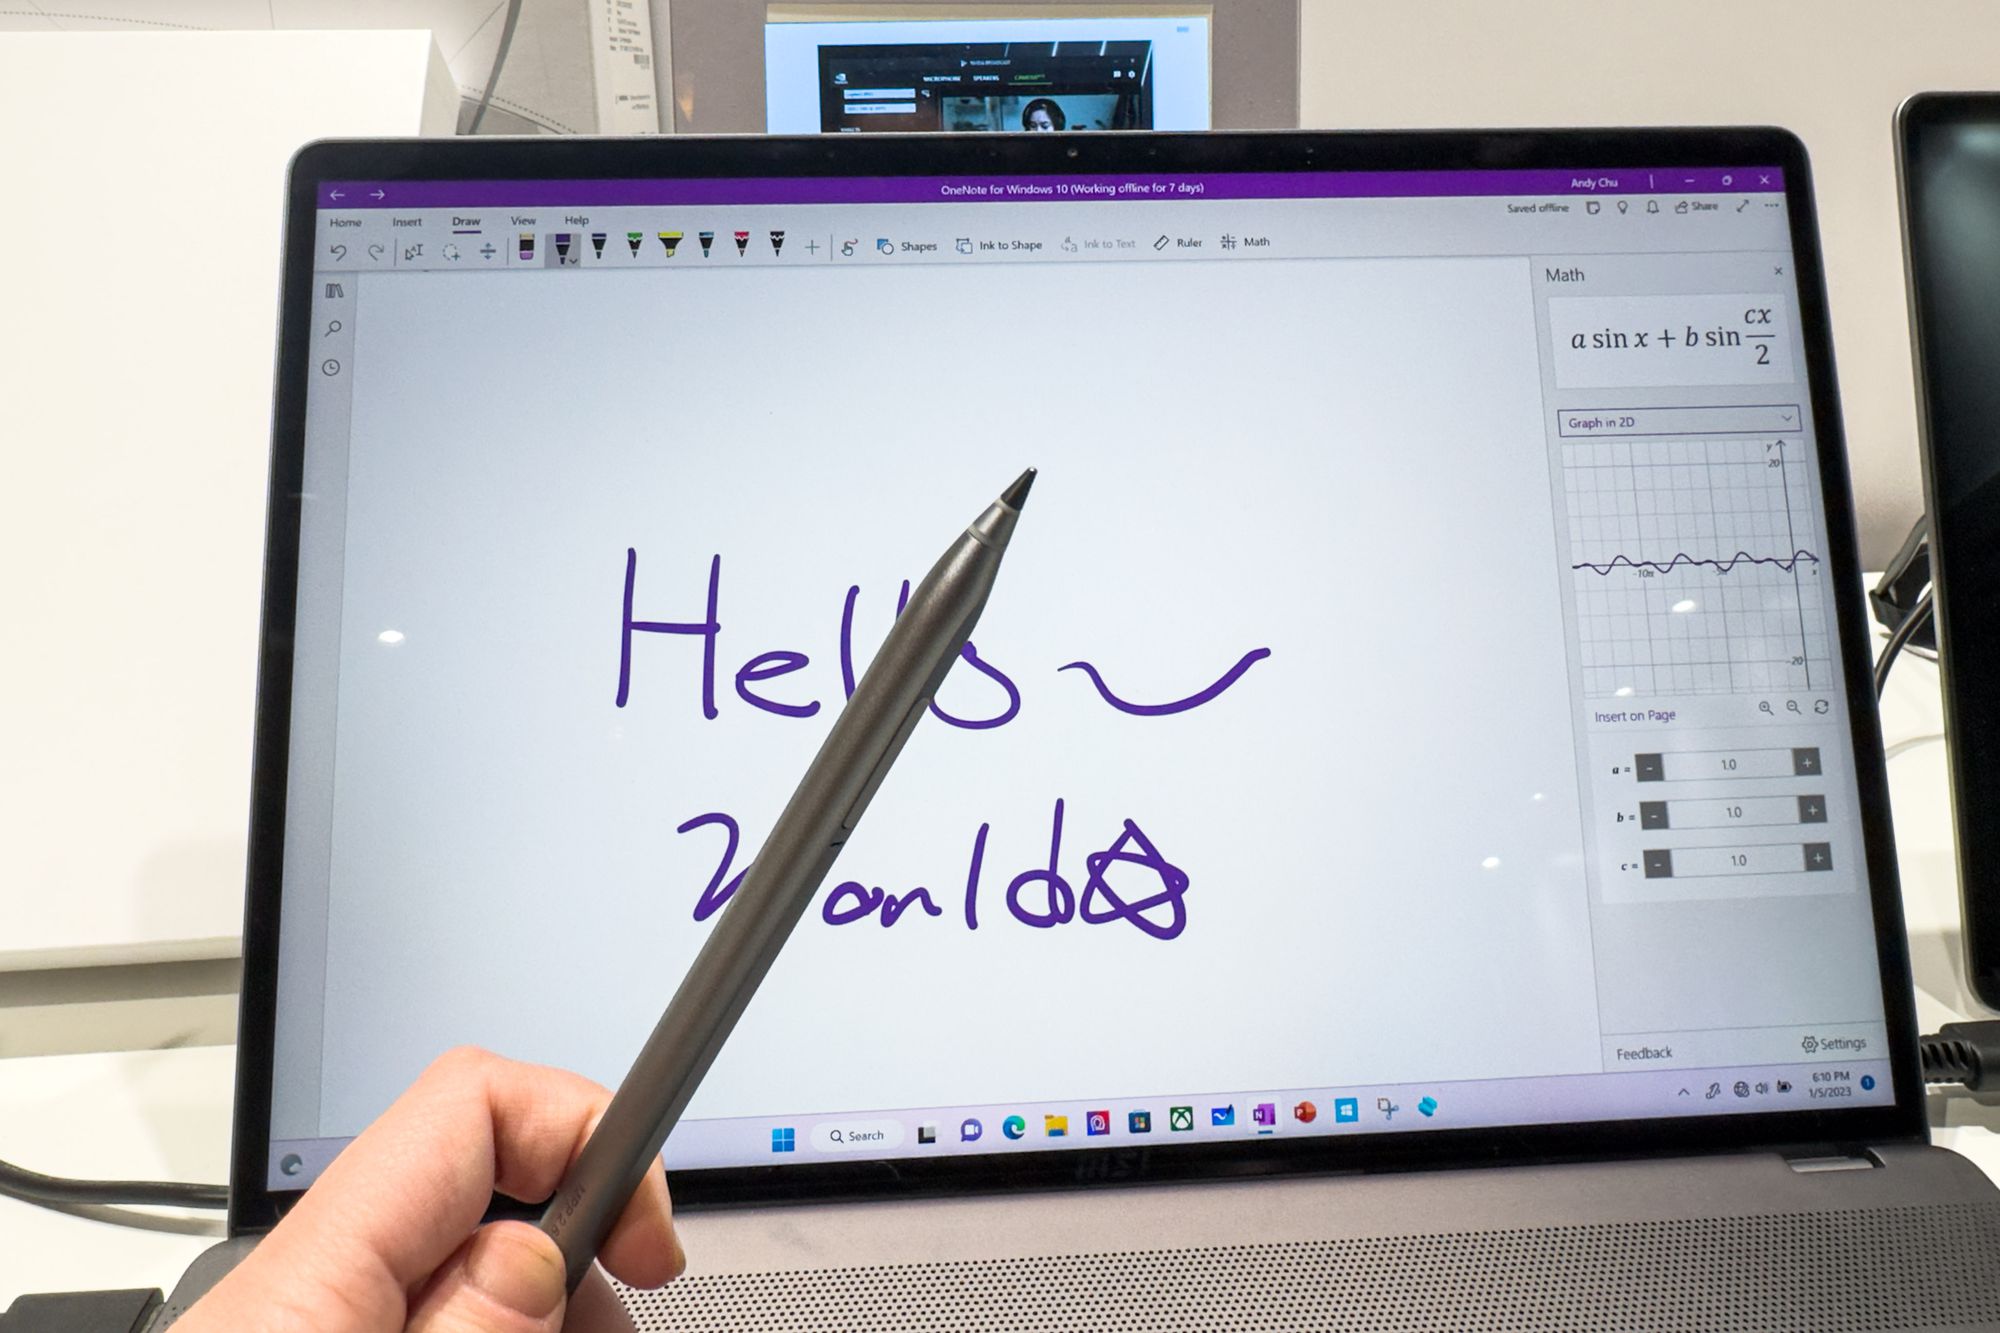 MSI wprowadza Pen 2, który może pisać zarówno na ekranie, jak i na papierze